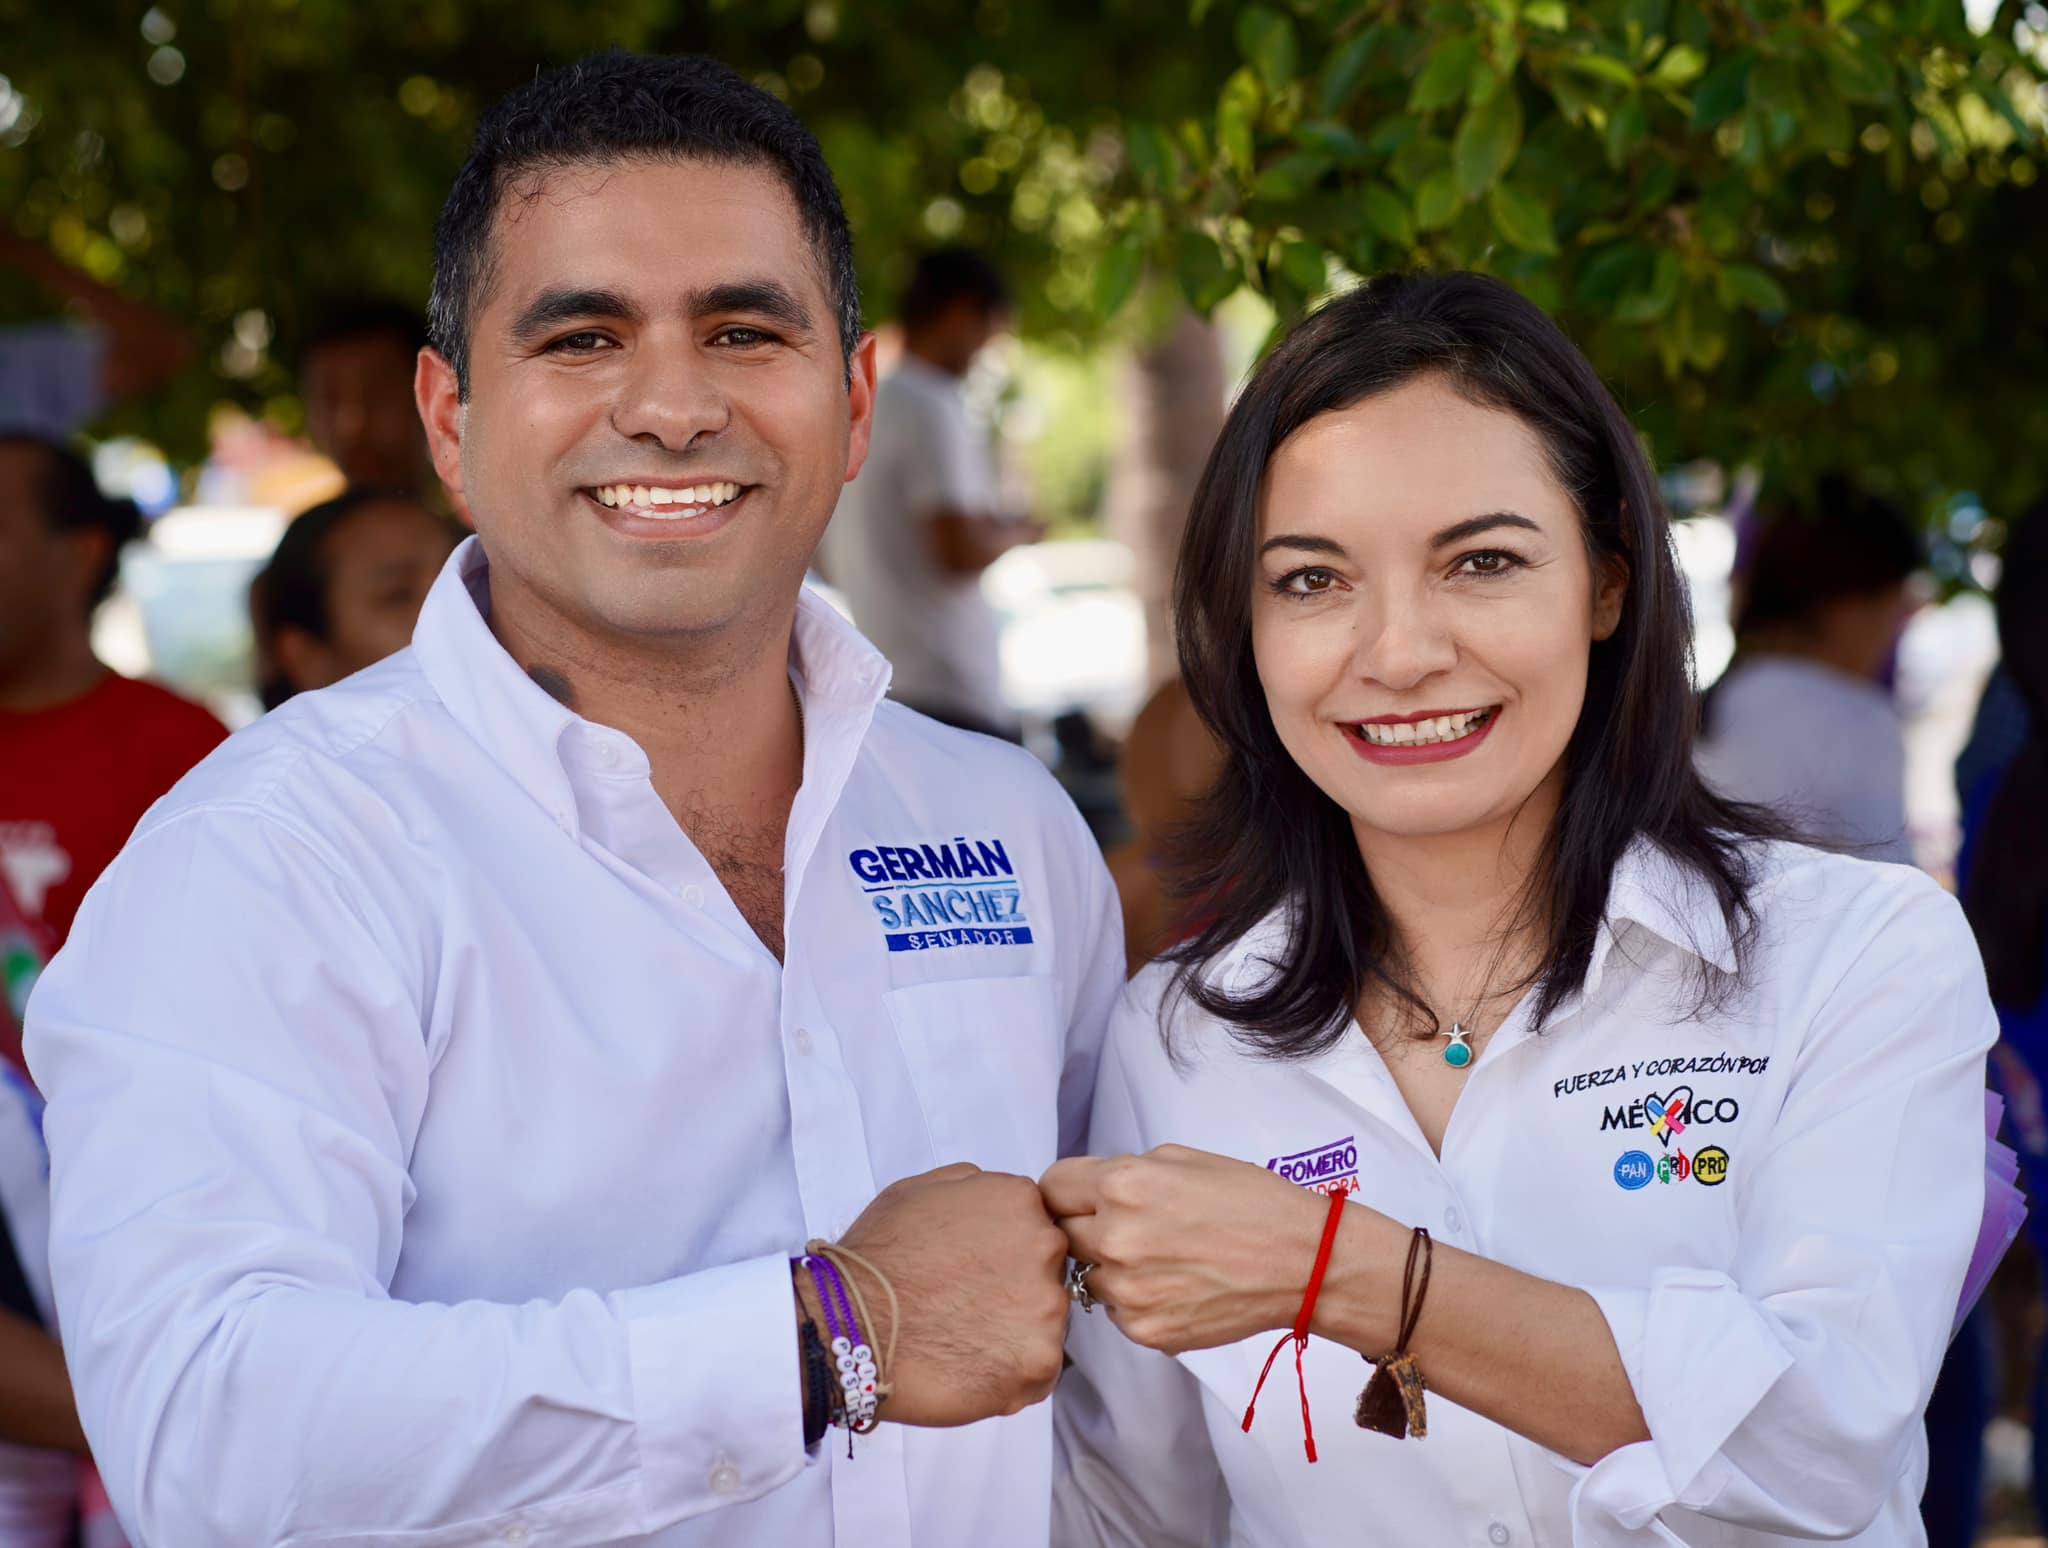 Germán Sánchez Álvarez y Mely Romero Celis, candidatos a senadores por la coalición “Fuerza y Corazón por México”.